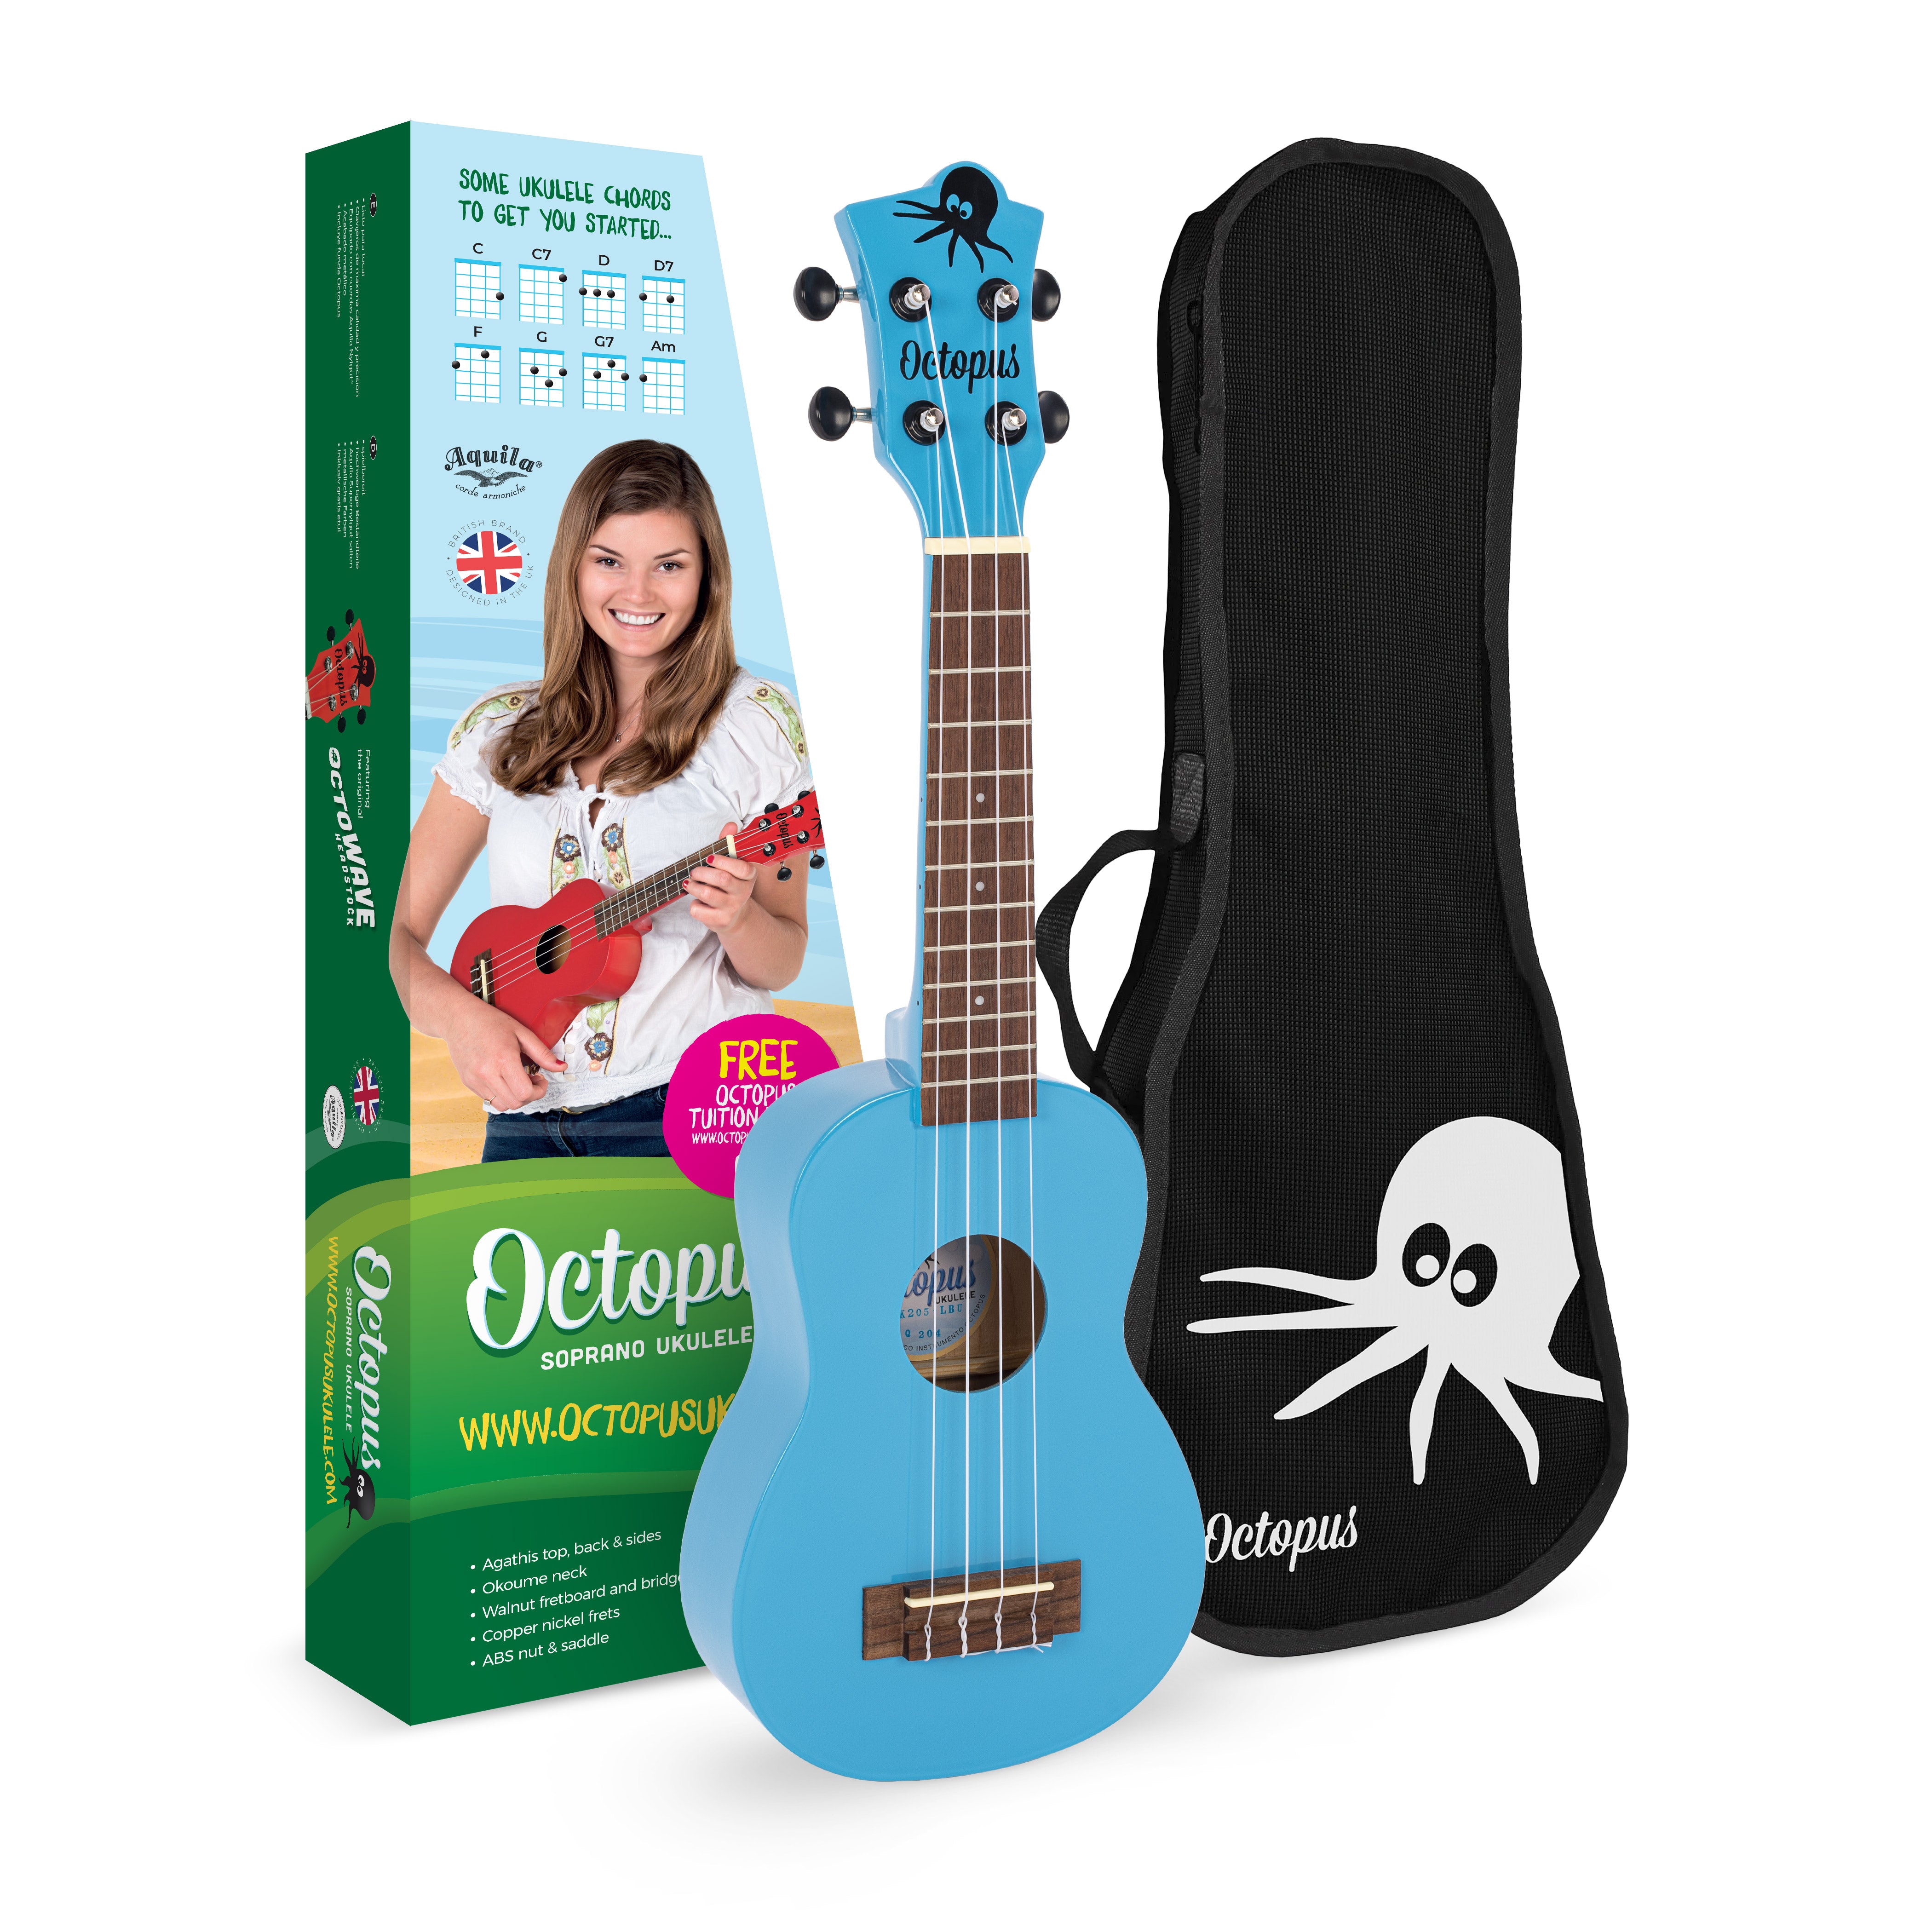 Academy soprano ukulele classroom pack of 24 – Octopus Ukulele